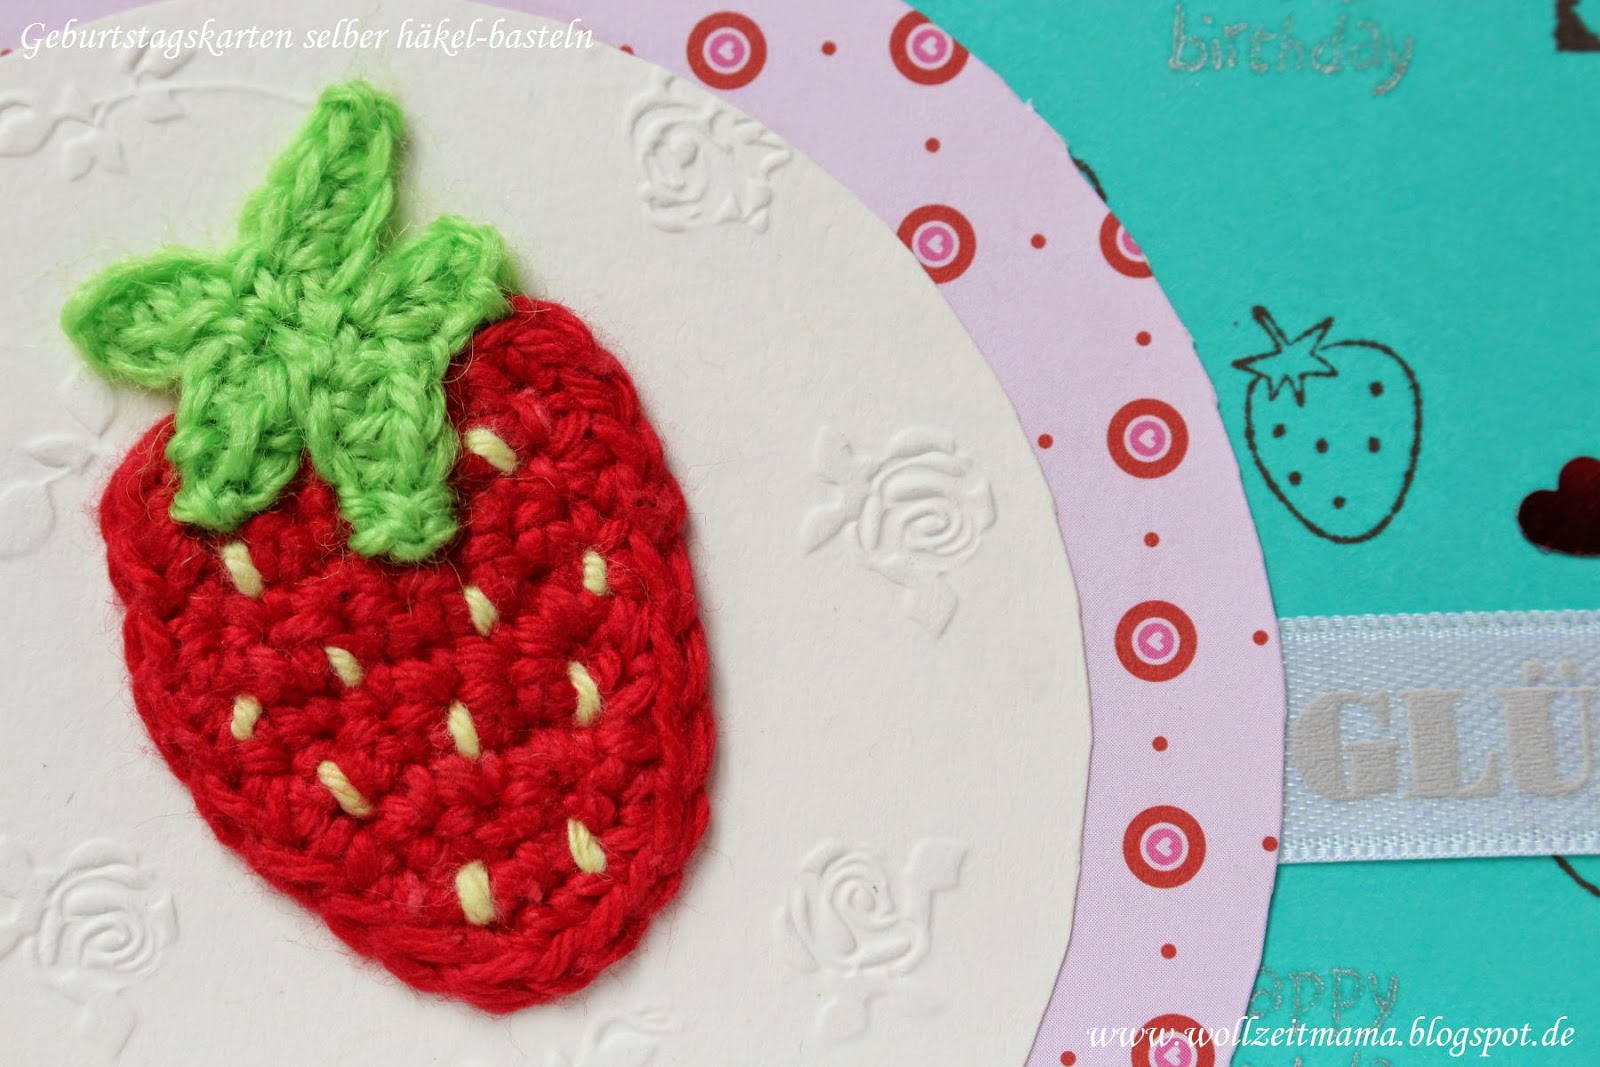 Geburtstagskarte selber häkeln und basteln - mit Erdbeere